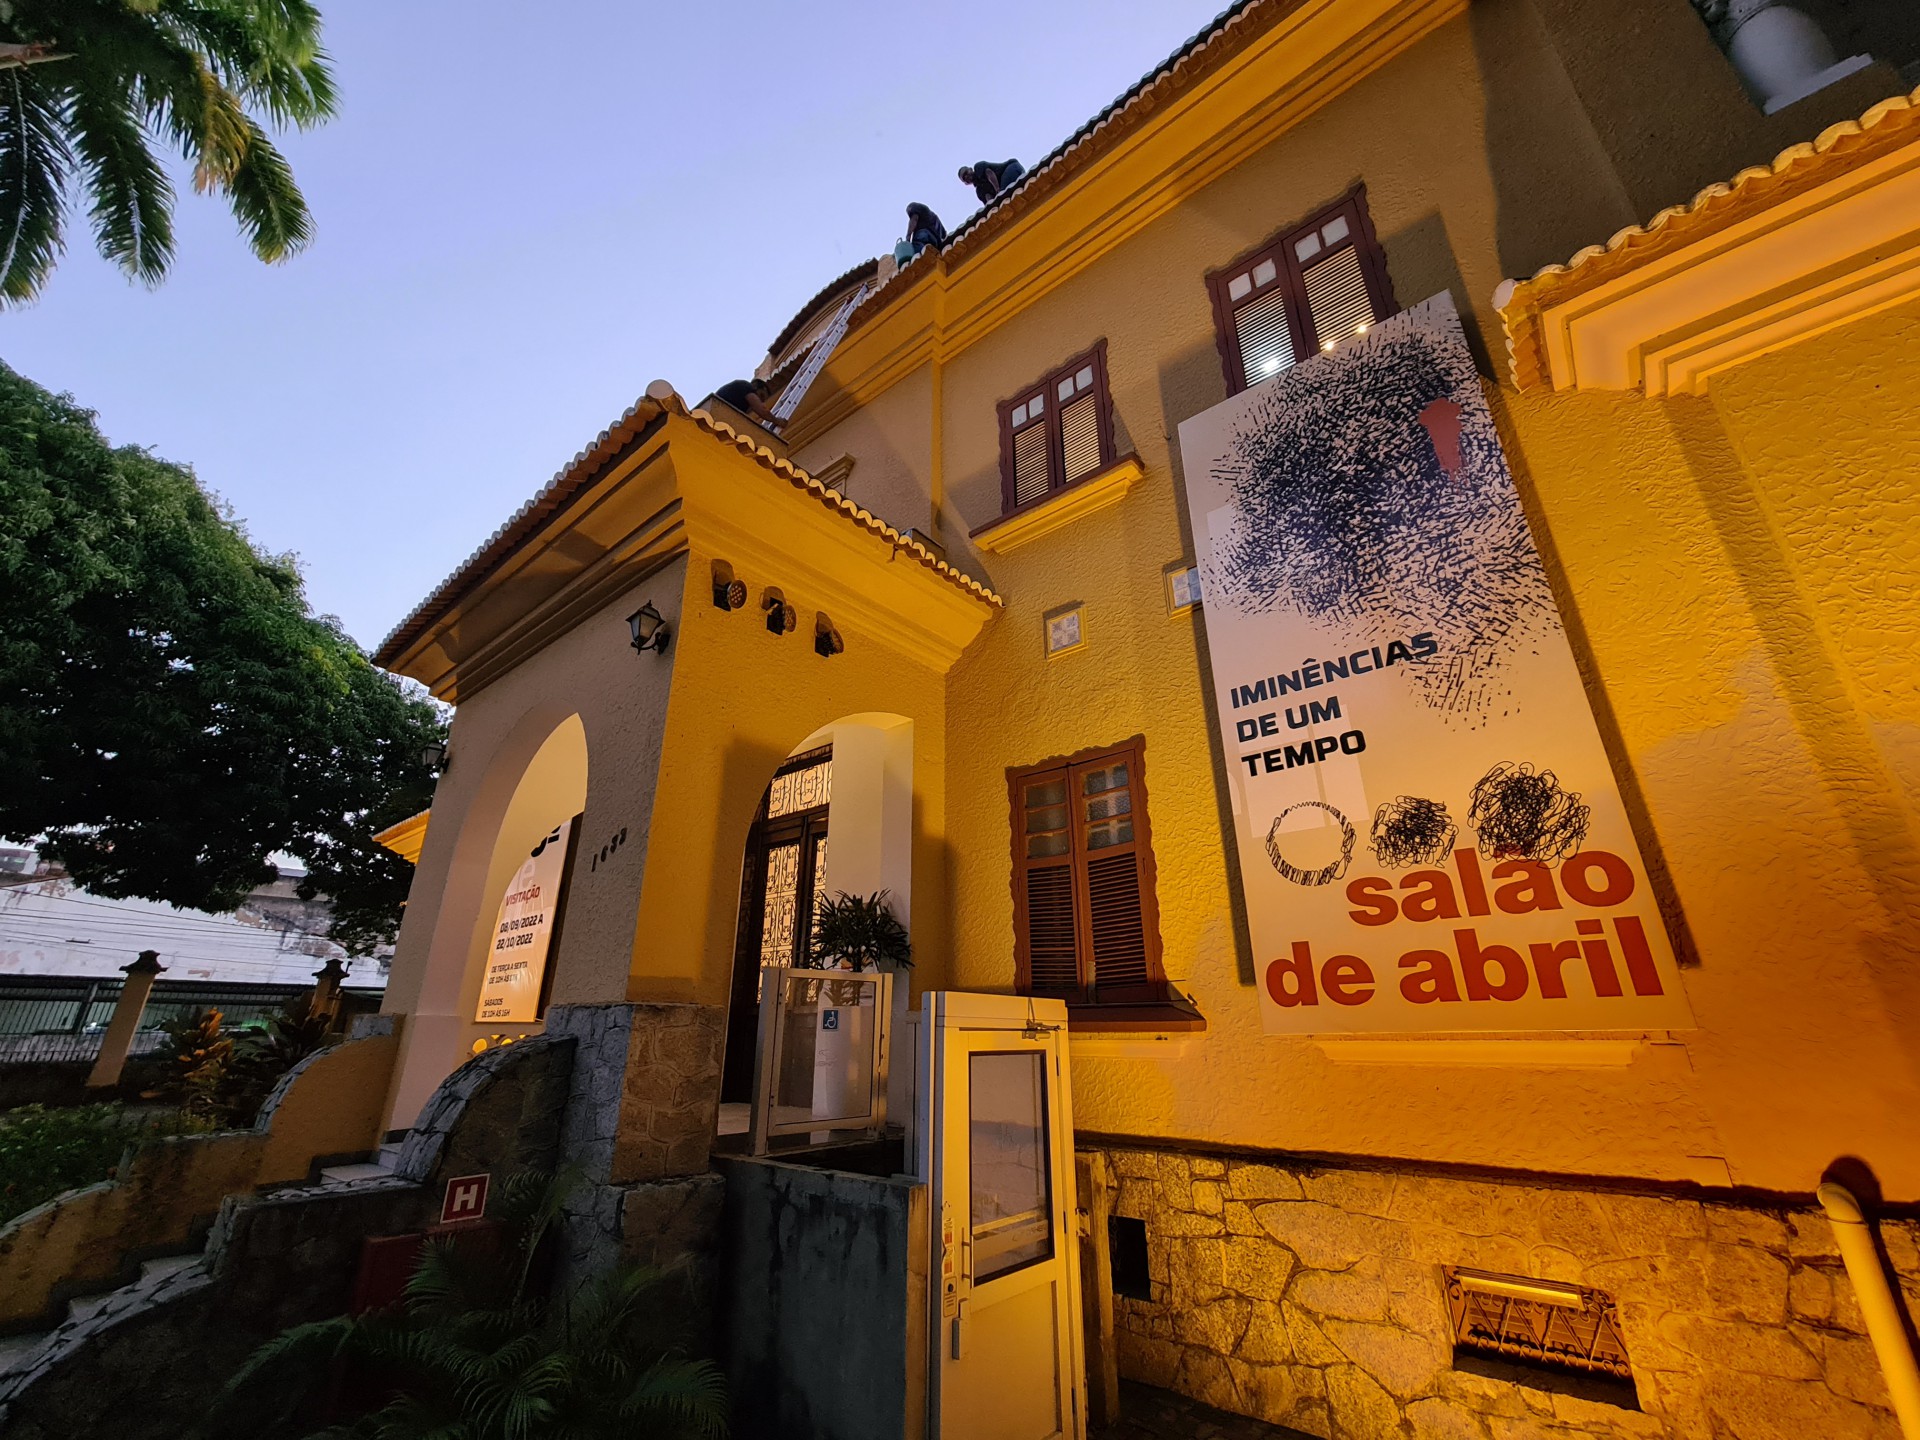 Tradicional Salão de Abril é um dos principais eventos de artes visuais do País (Foto: Thiago Matine/Divulgação)